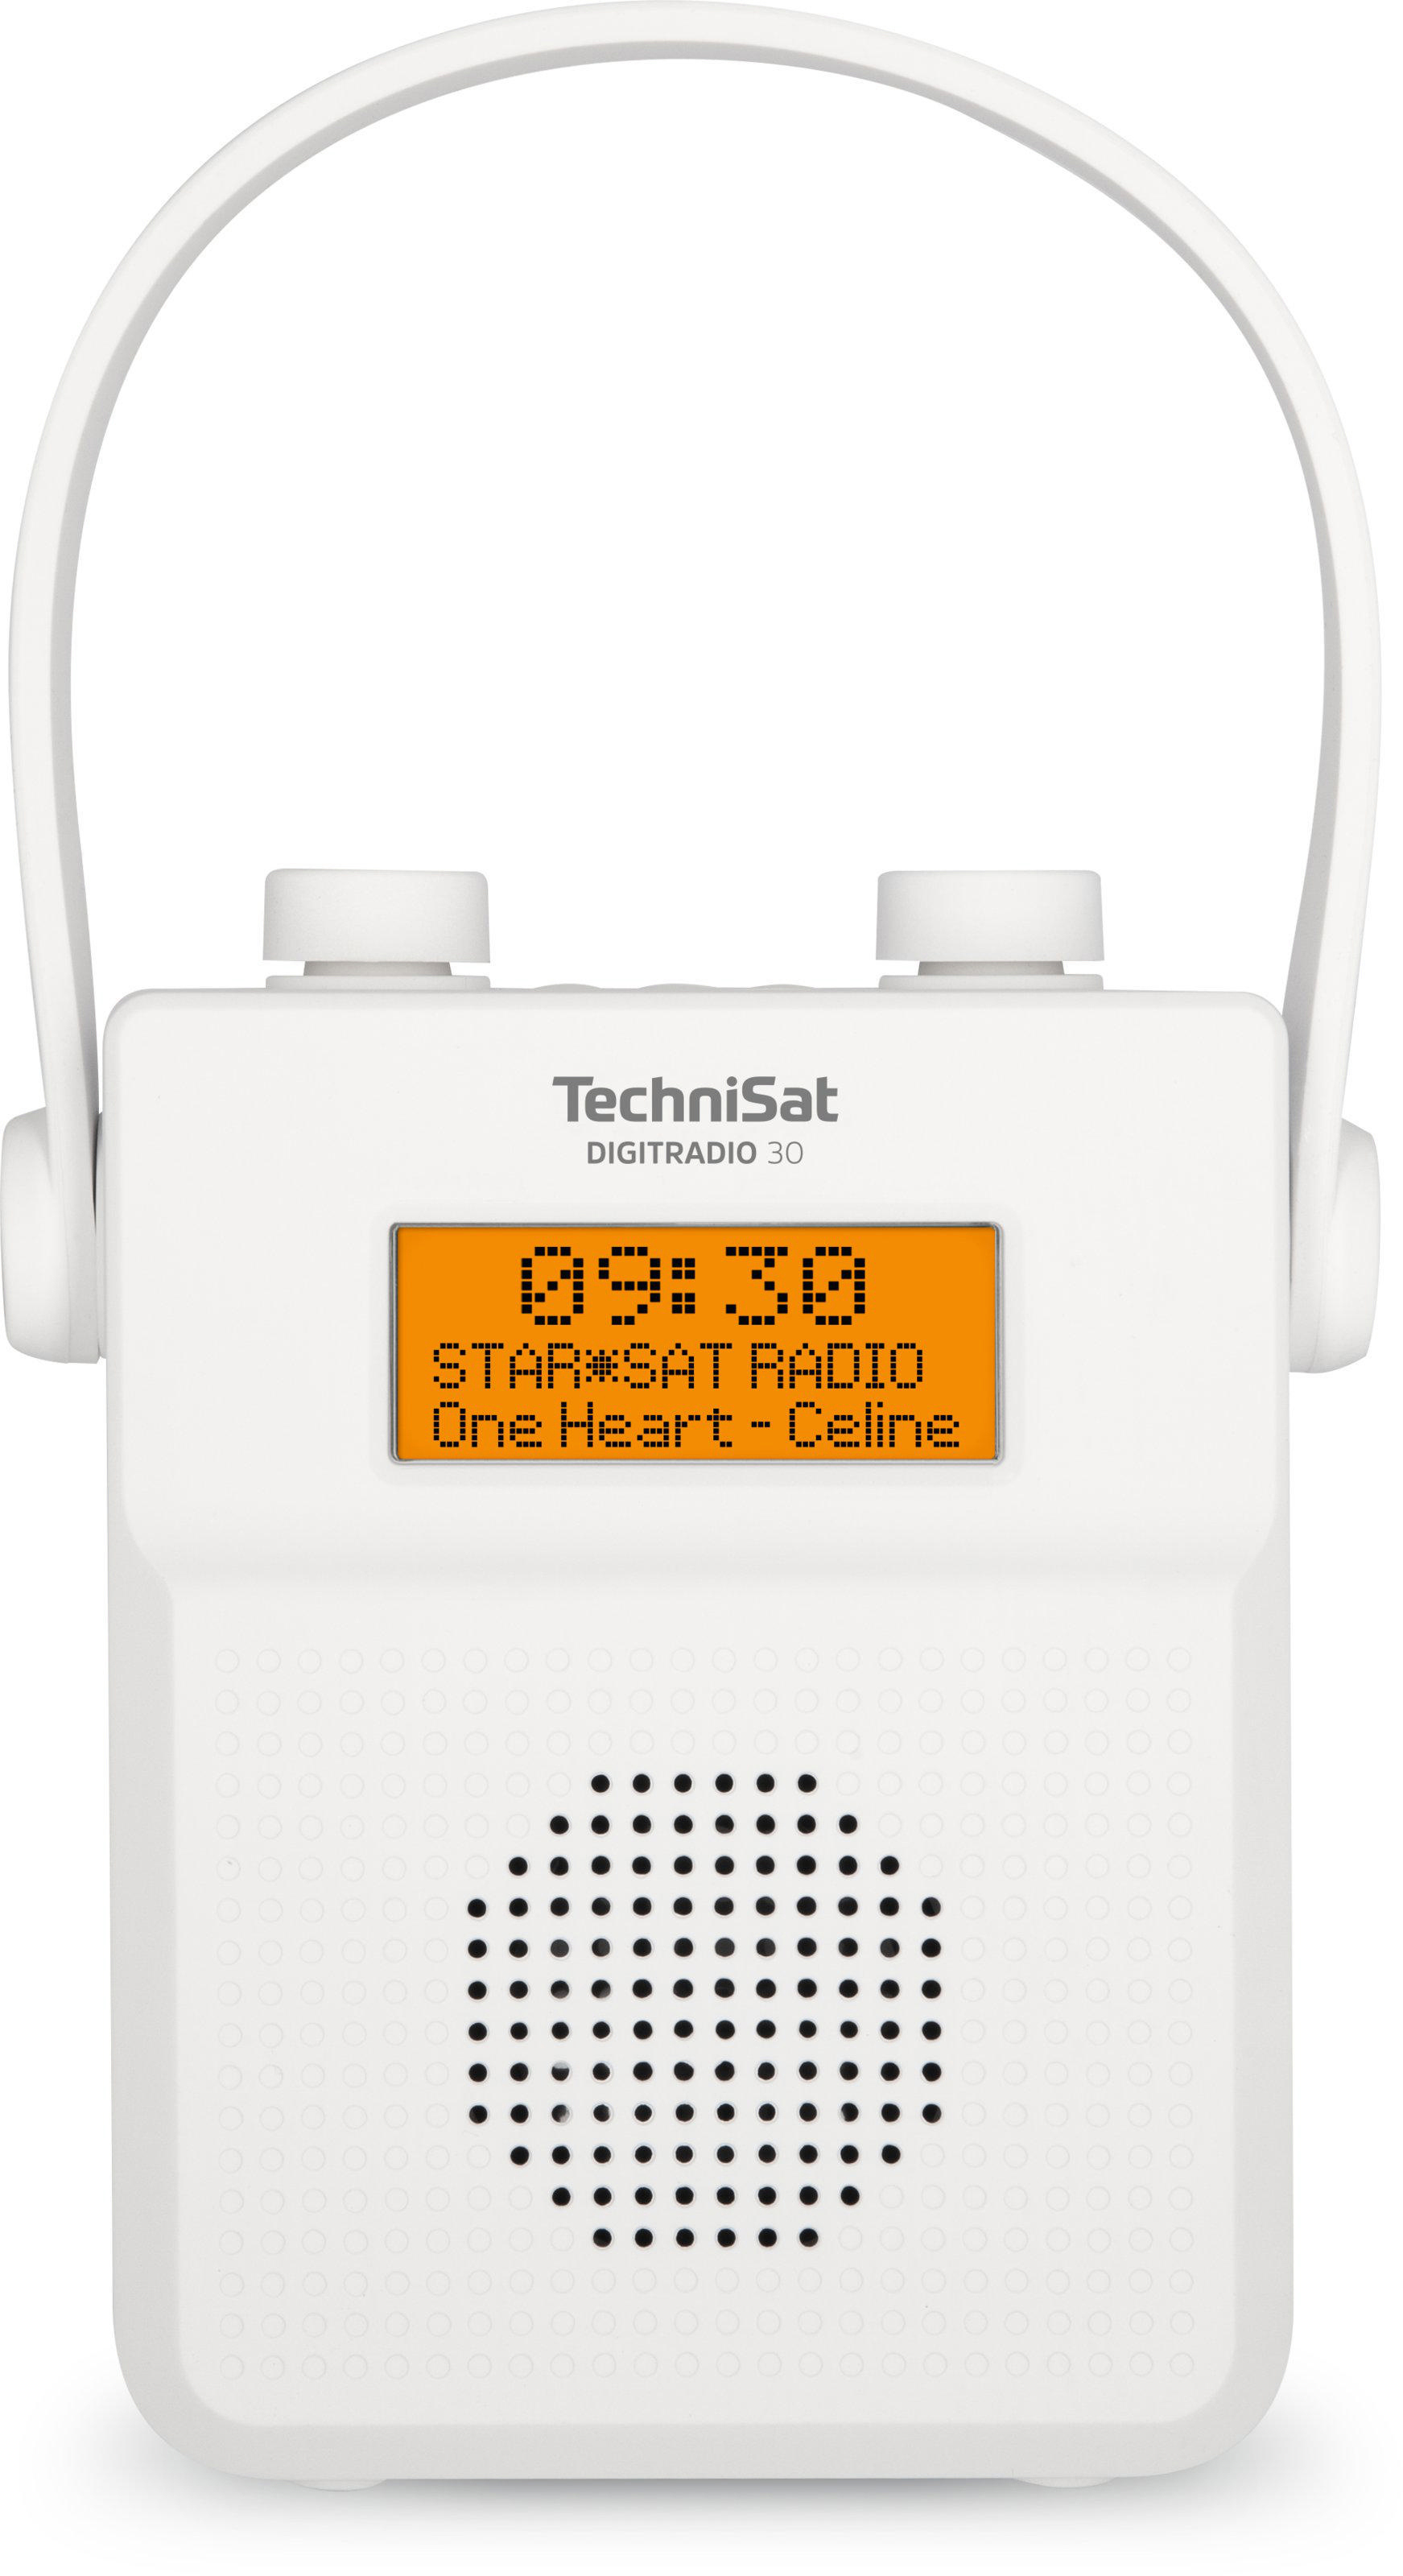 Weiß Duschradio, FM, DIGITRADIO TECHNISAT Portables DAB+, 30